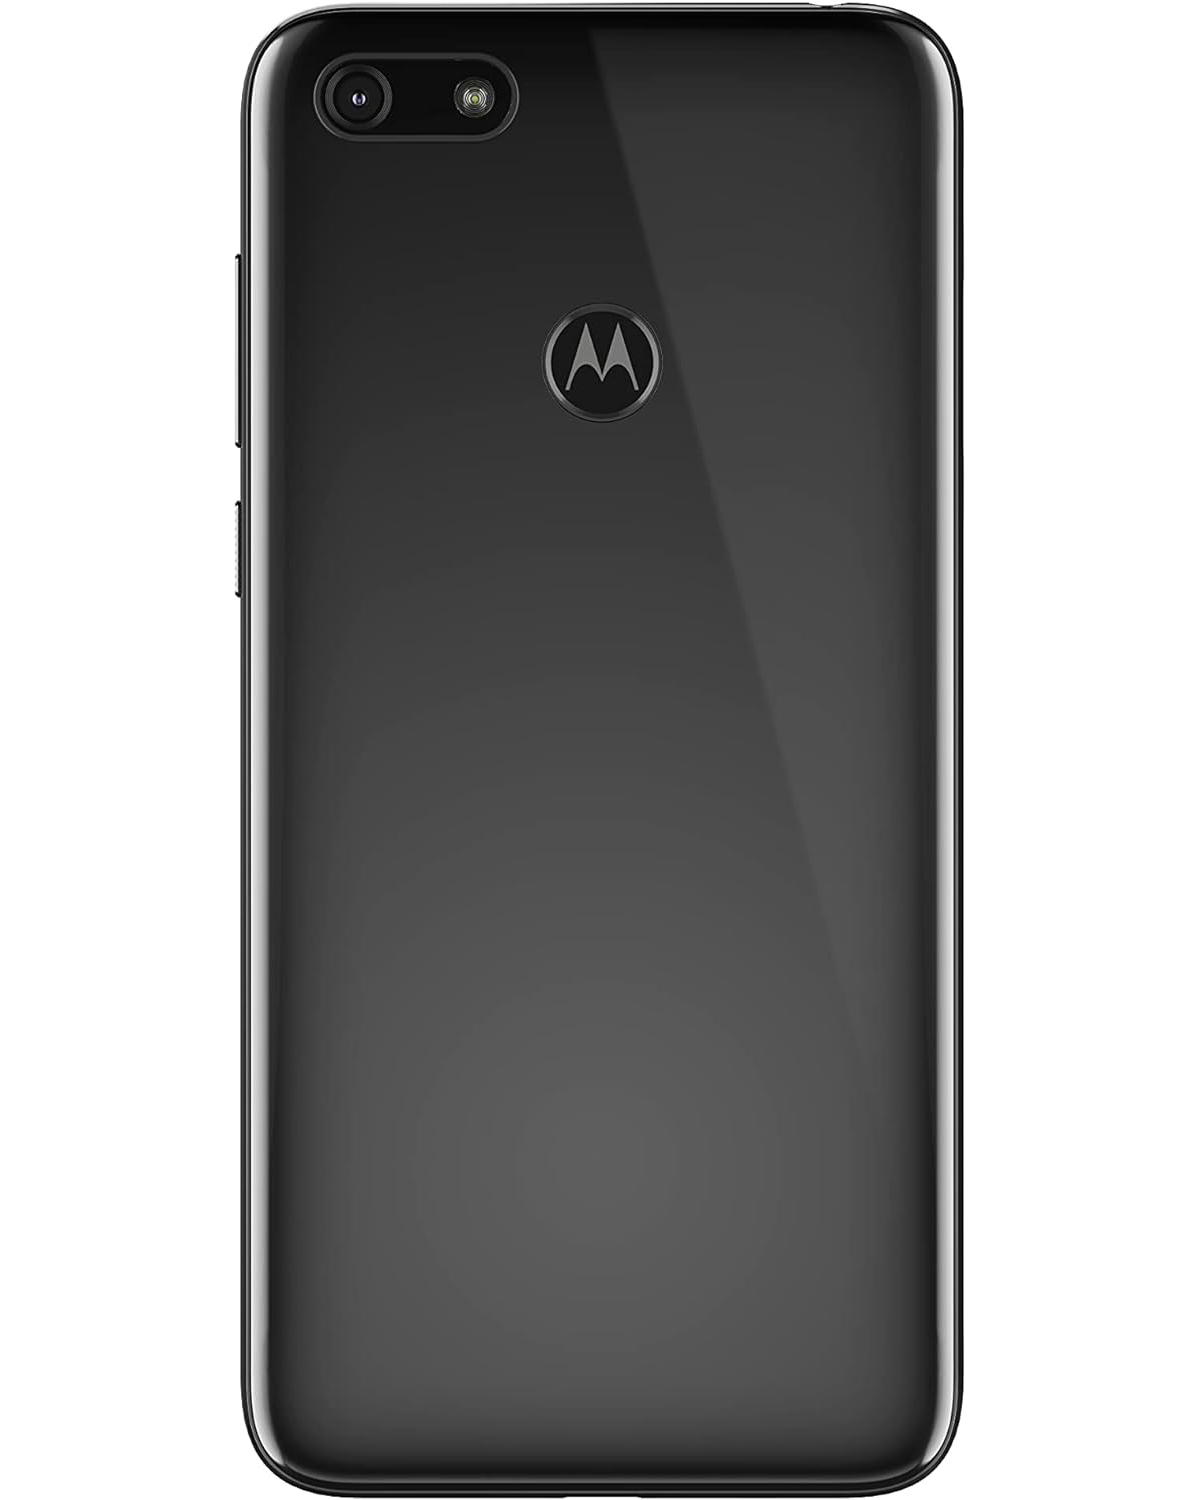 MOTOROLA REFURBISHED (*) schwarz Moto Play GB E6 Dual-SIM SIM Dual 32